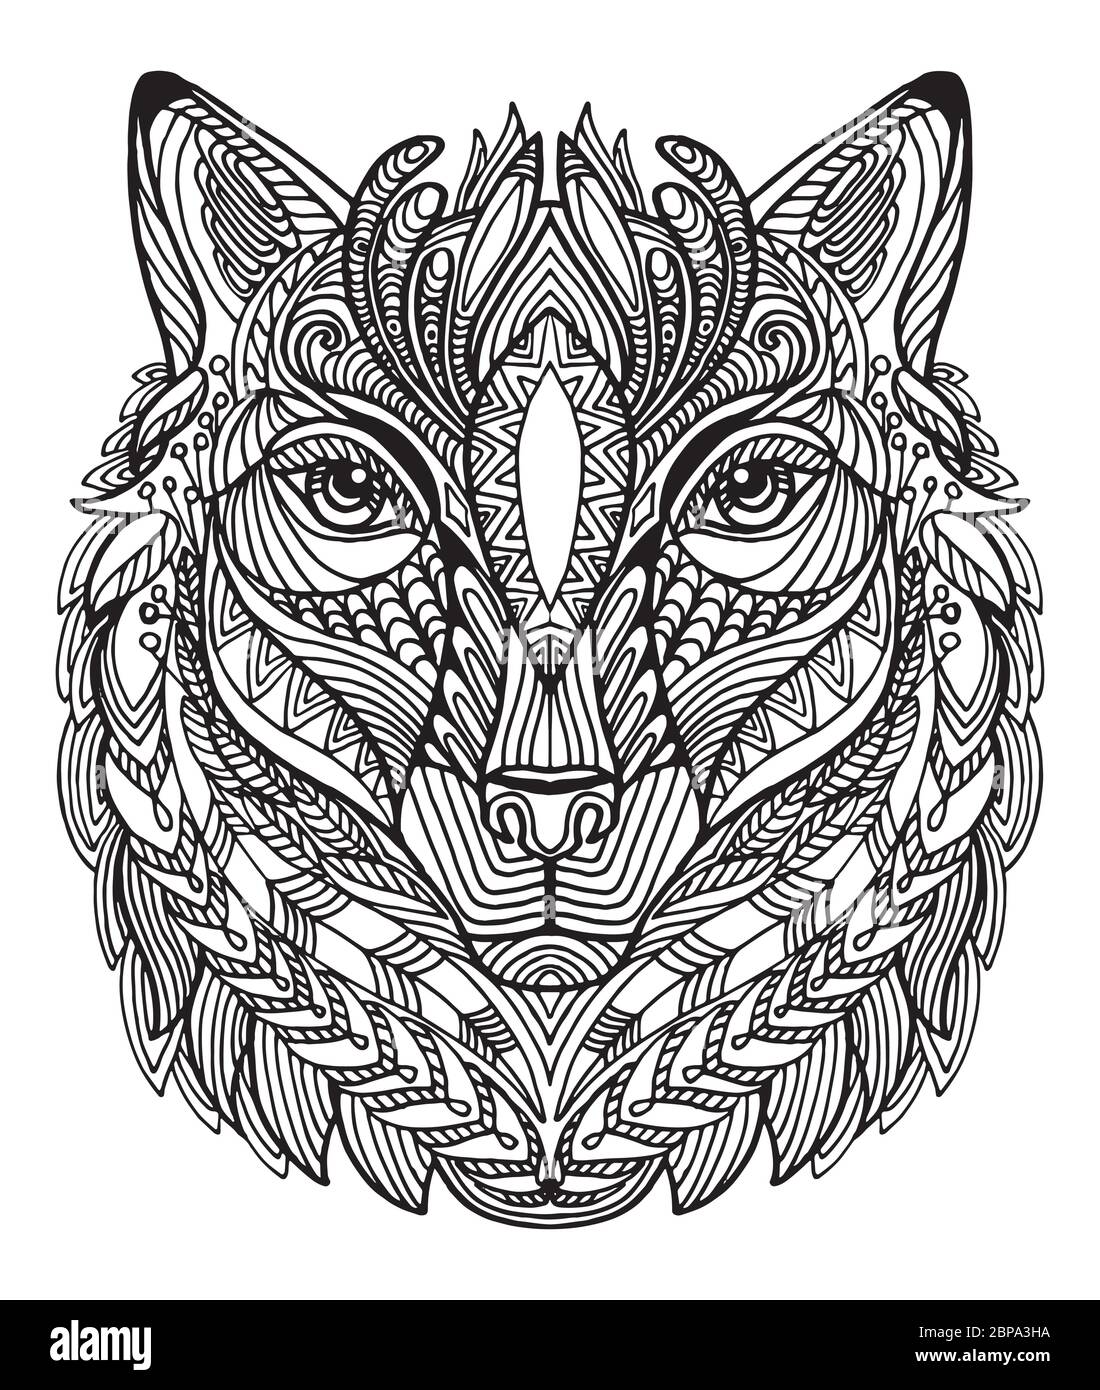 Vettore decorativo doodle testa ornamentale di lupo. Illustrazione vettoriale astratta del contorno nero lupo isolato su sfondo bianco. Illustrazione del magazzino Illustrazione Vettoriale